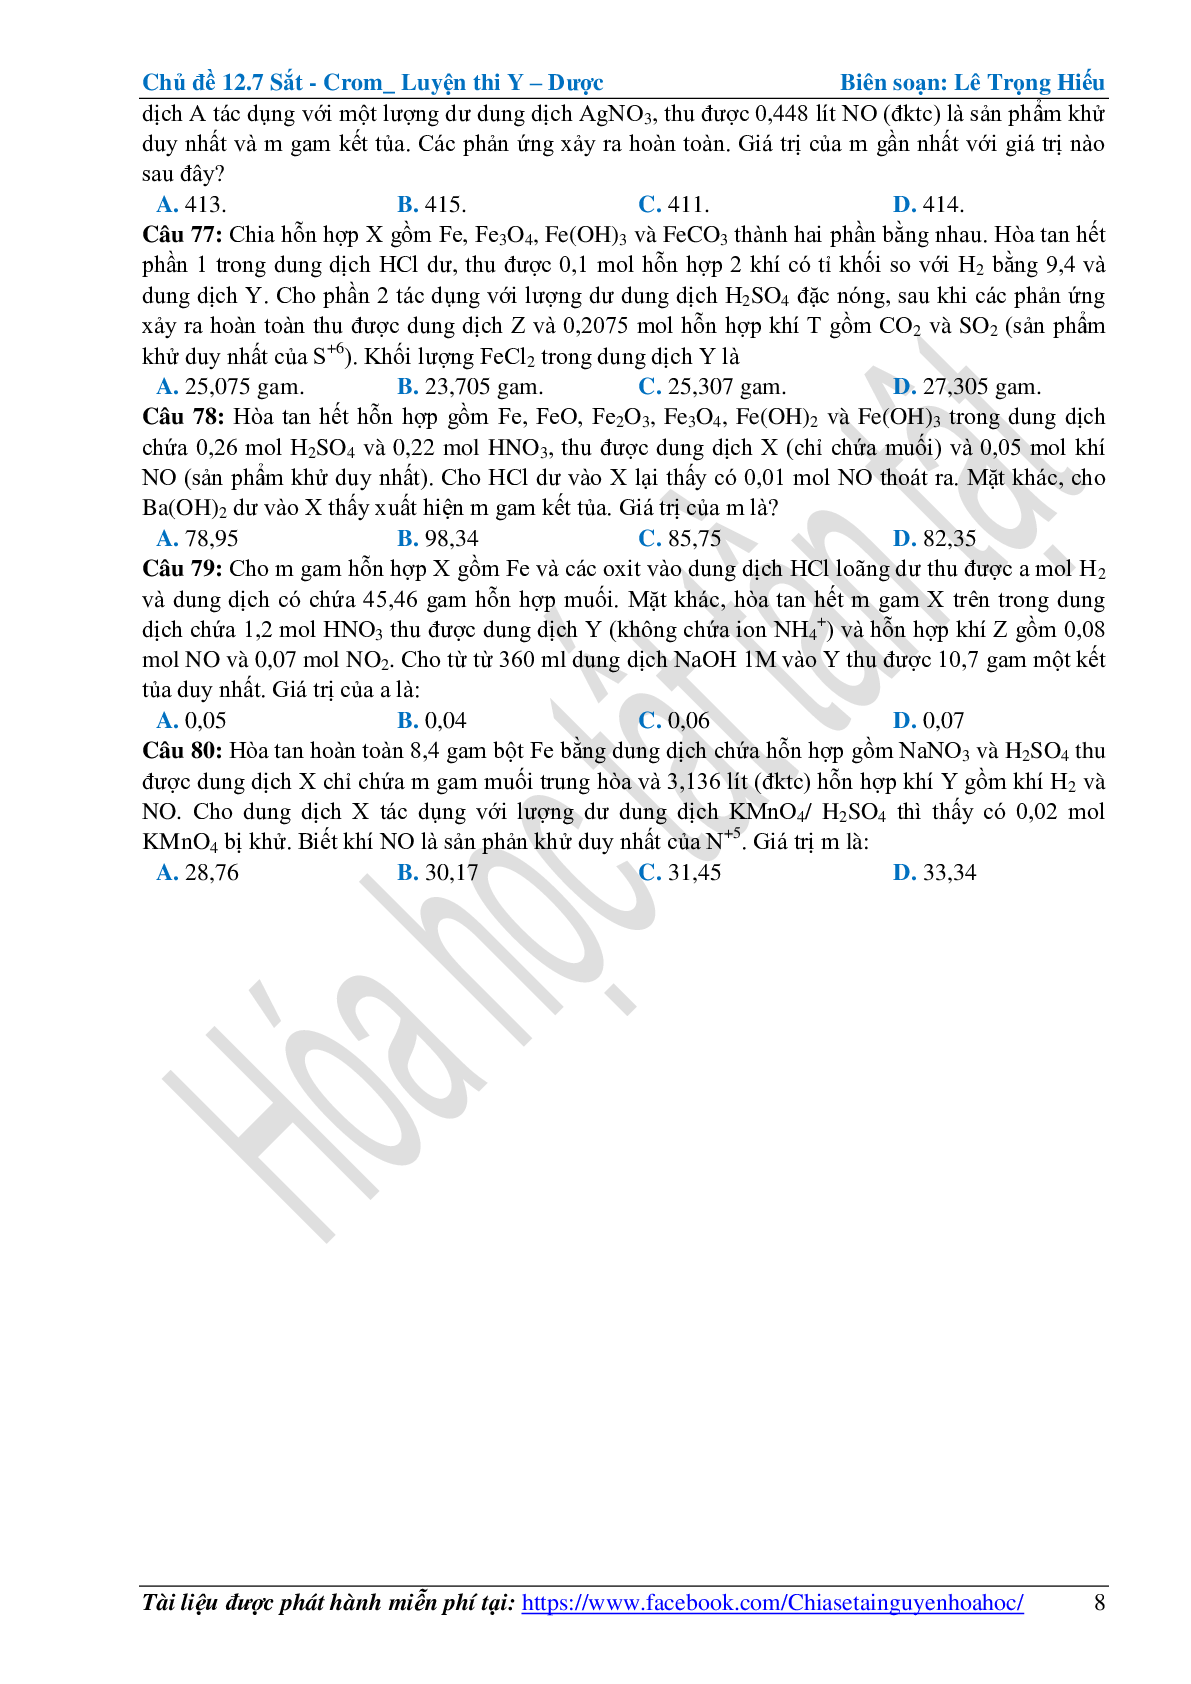 Bài tập về sắt-crom cơ bản, nâng cao (trang 8)